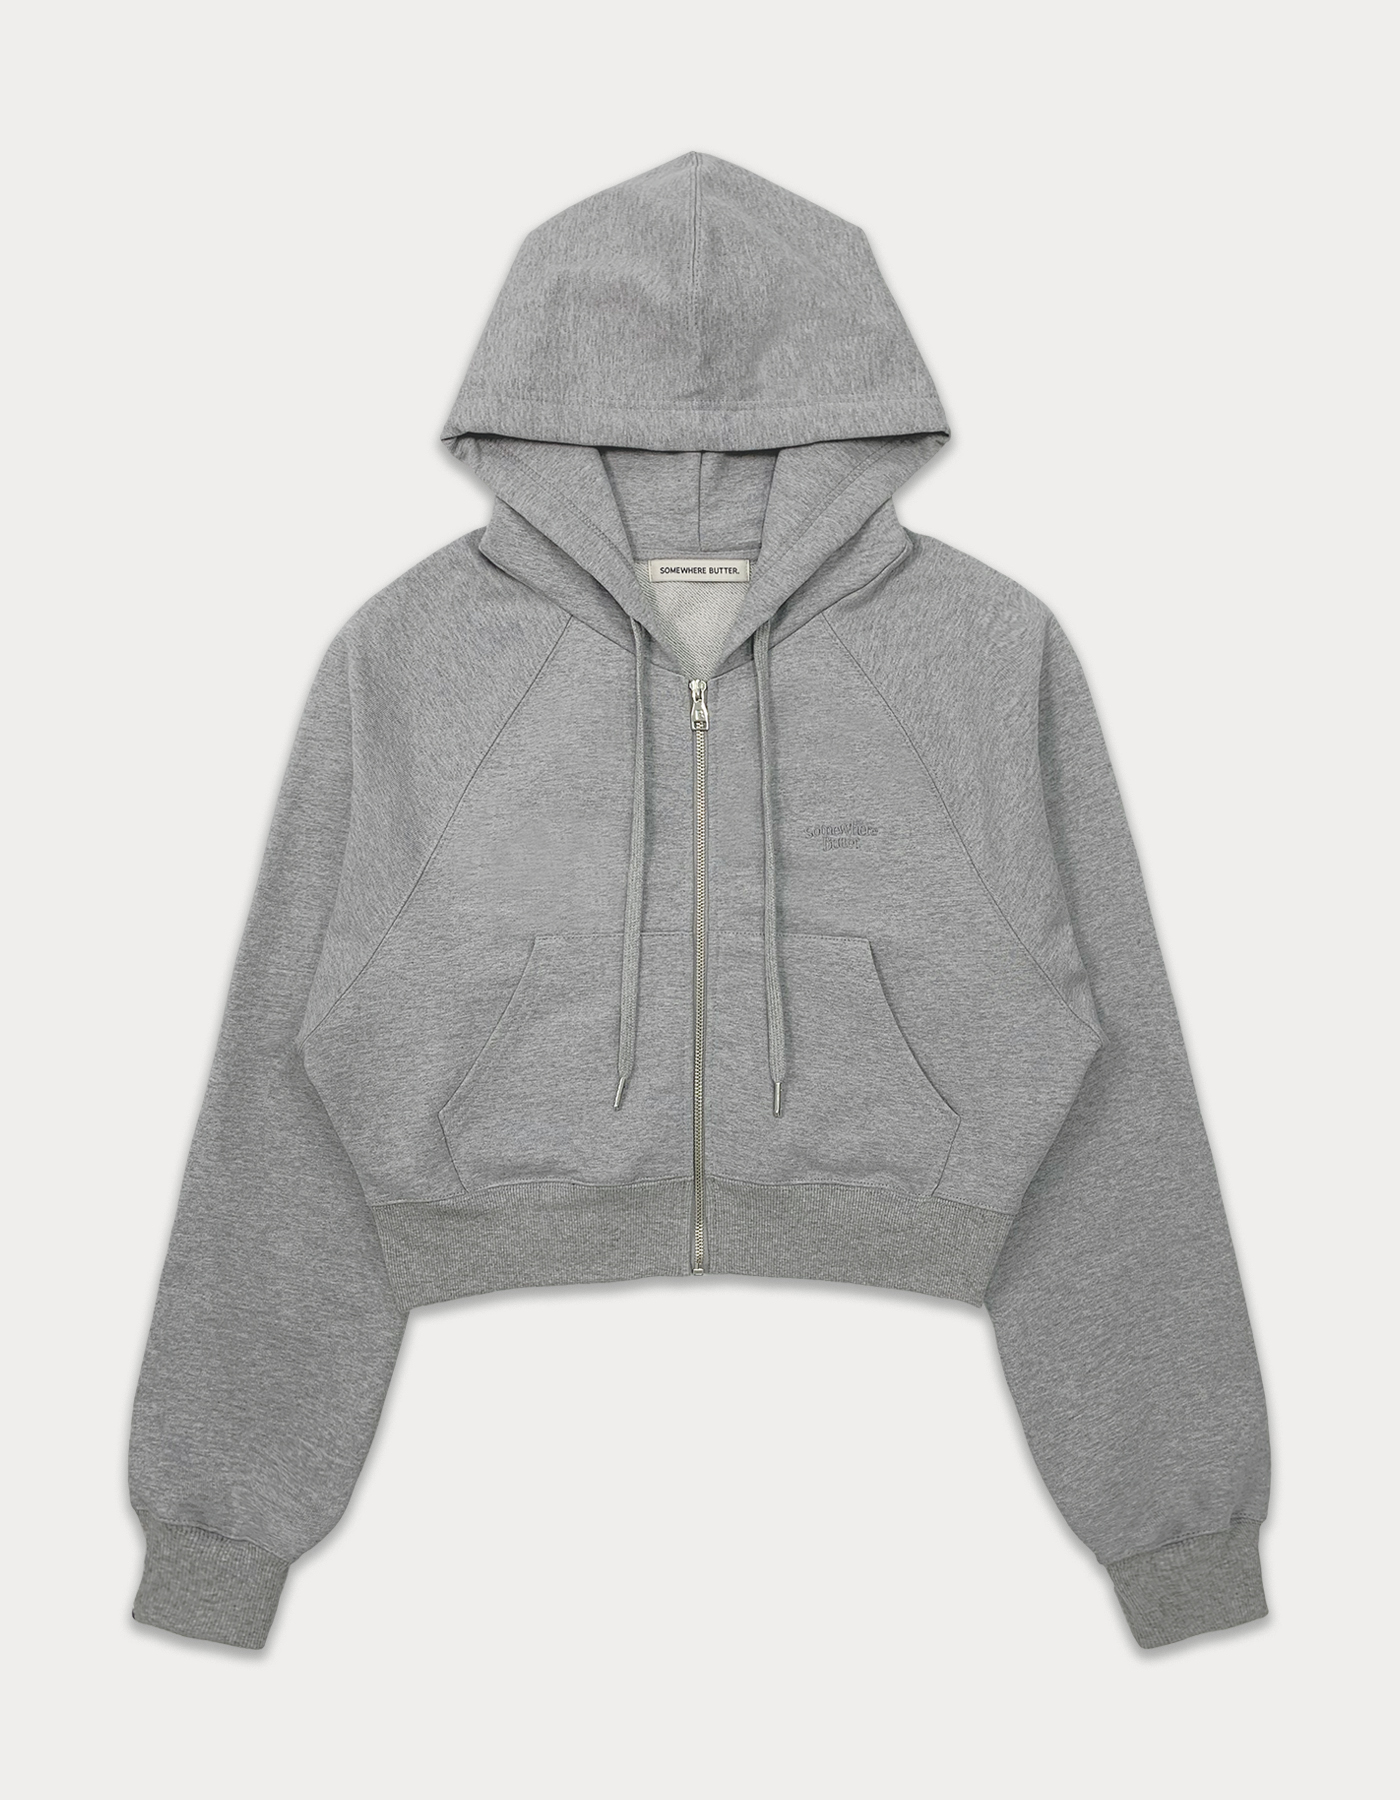 Essential crop hood zip-up - grey